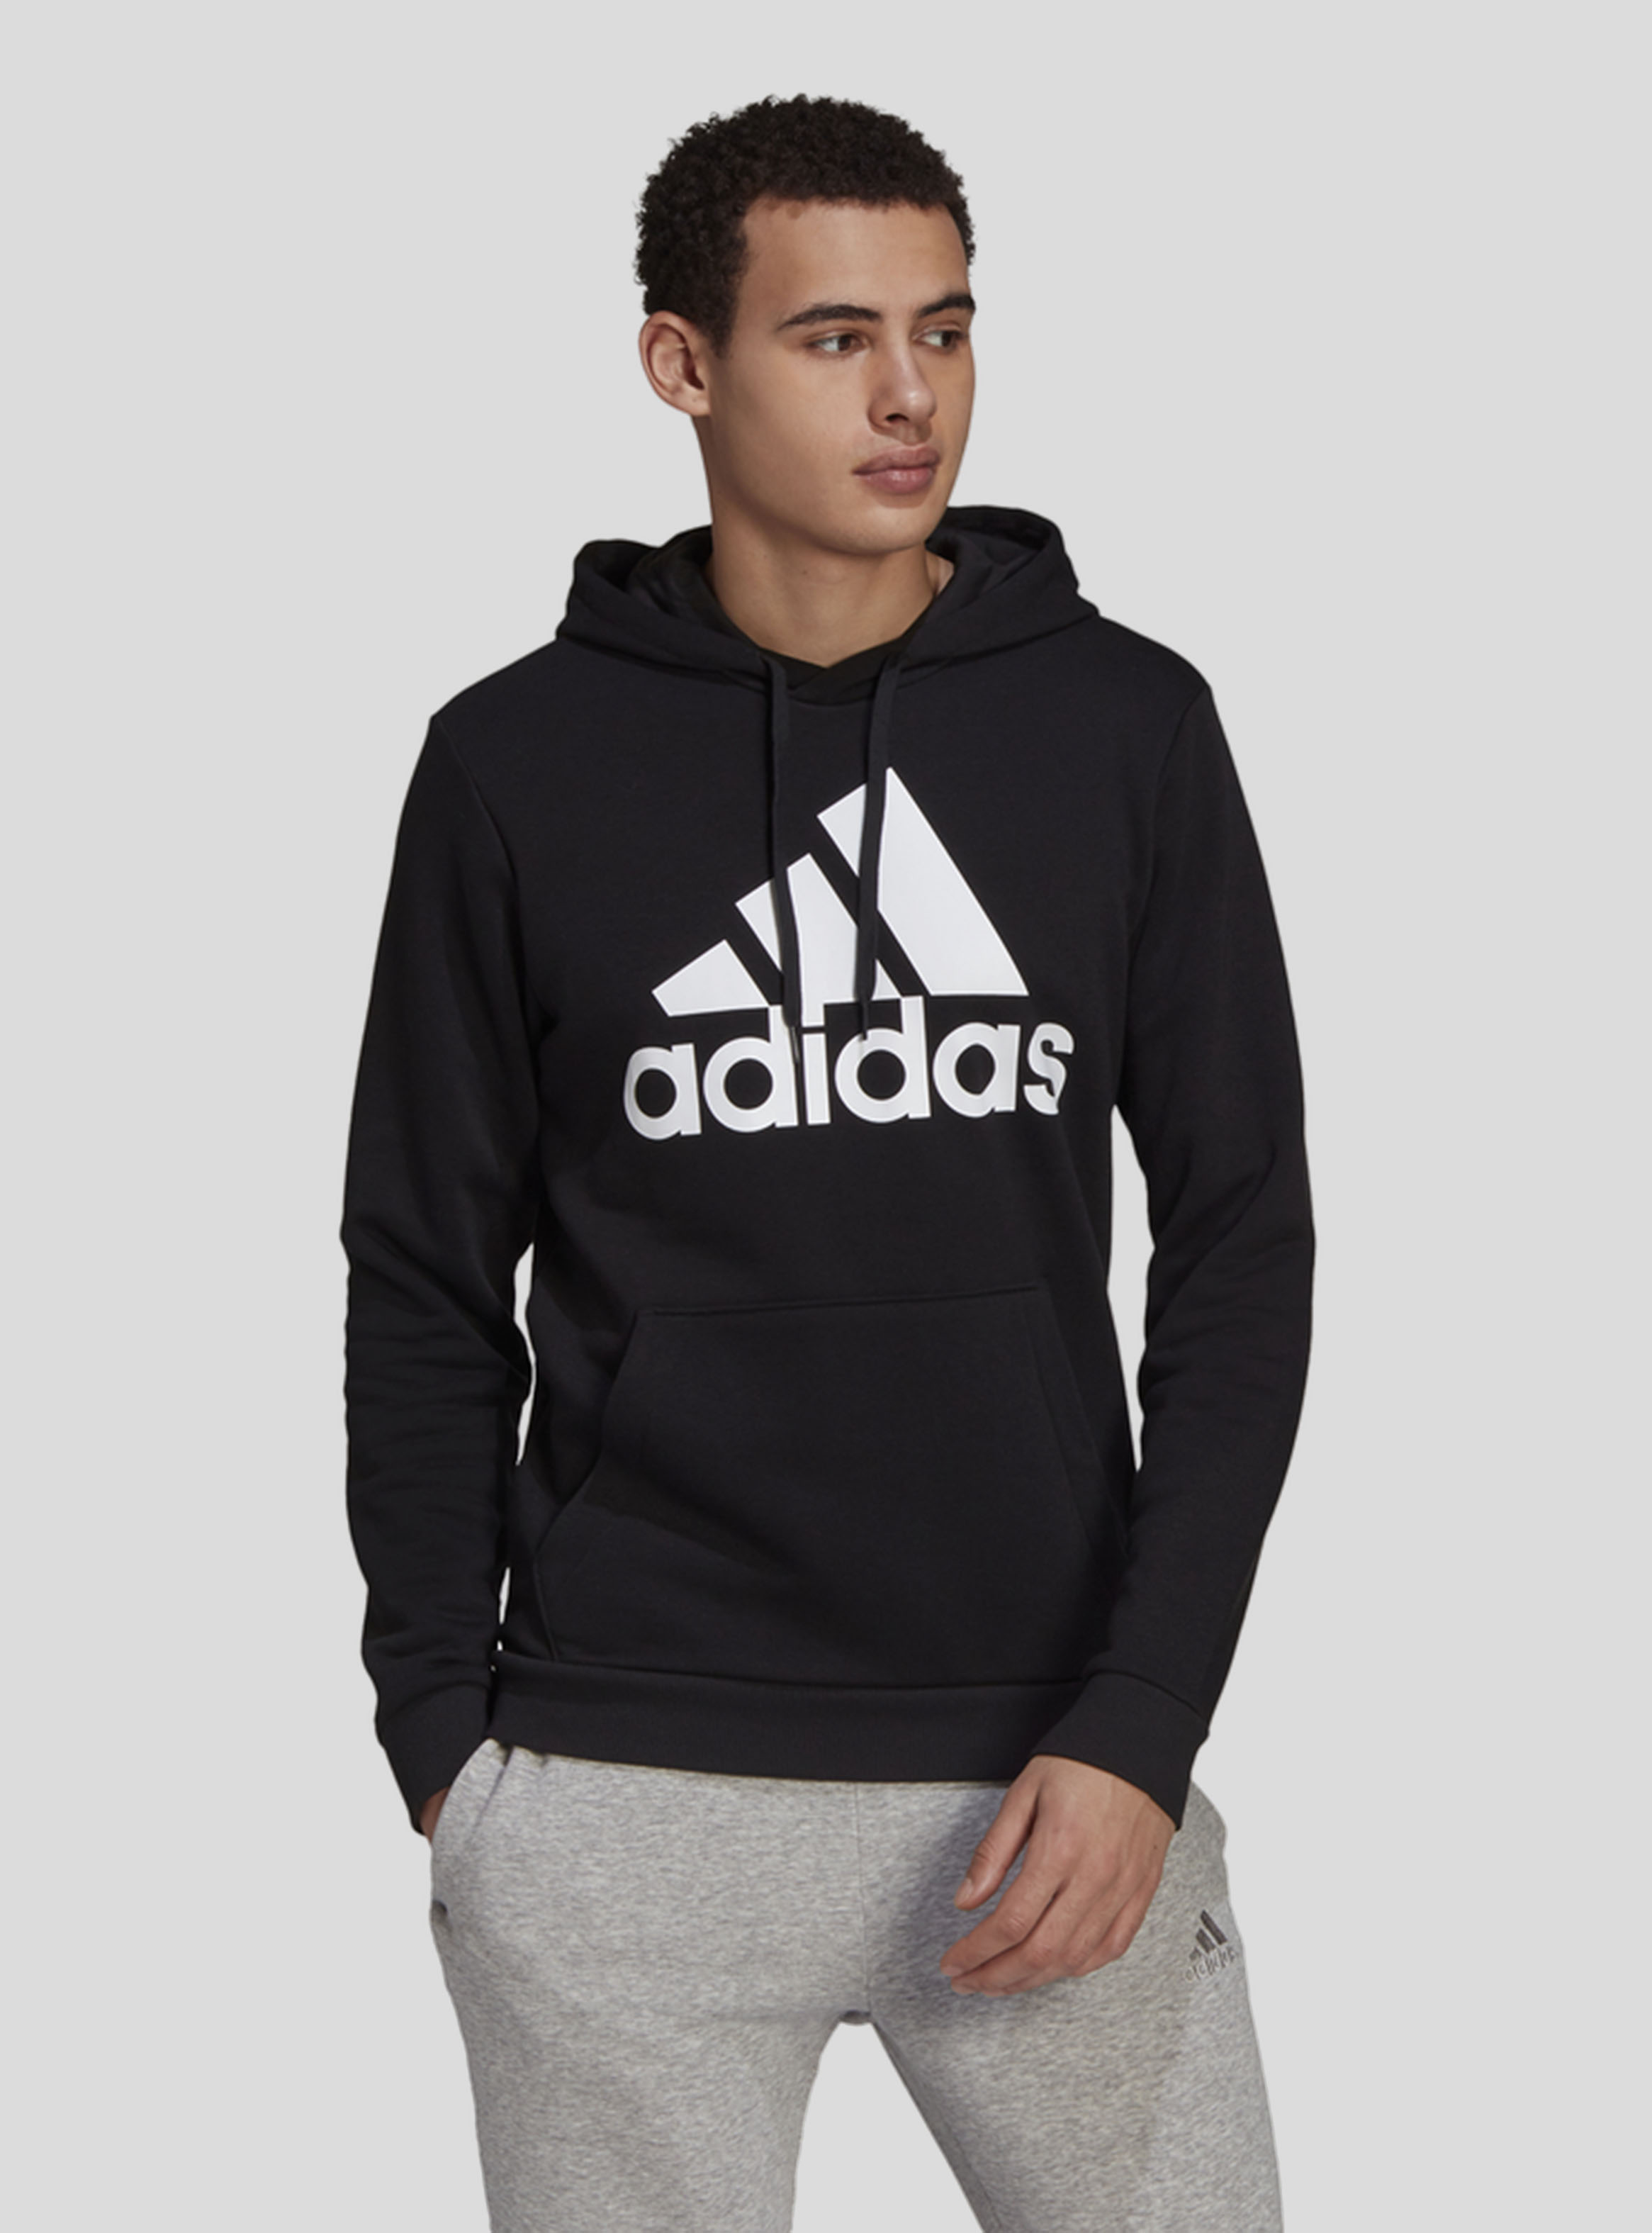 Polerón Adidas Essentials Fleece Big Logo Negro Hombre - Polerones y Polar |